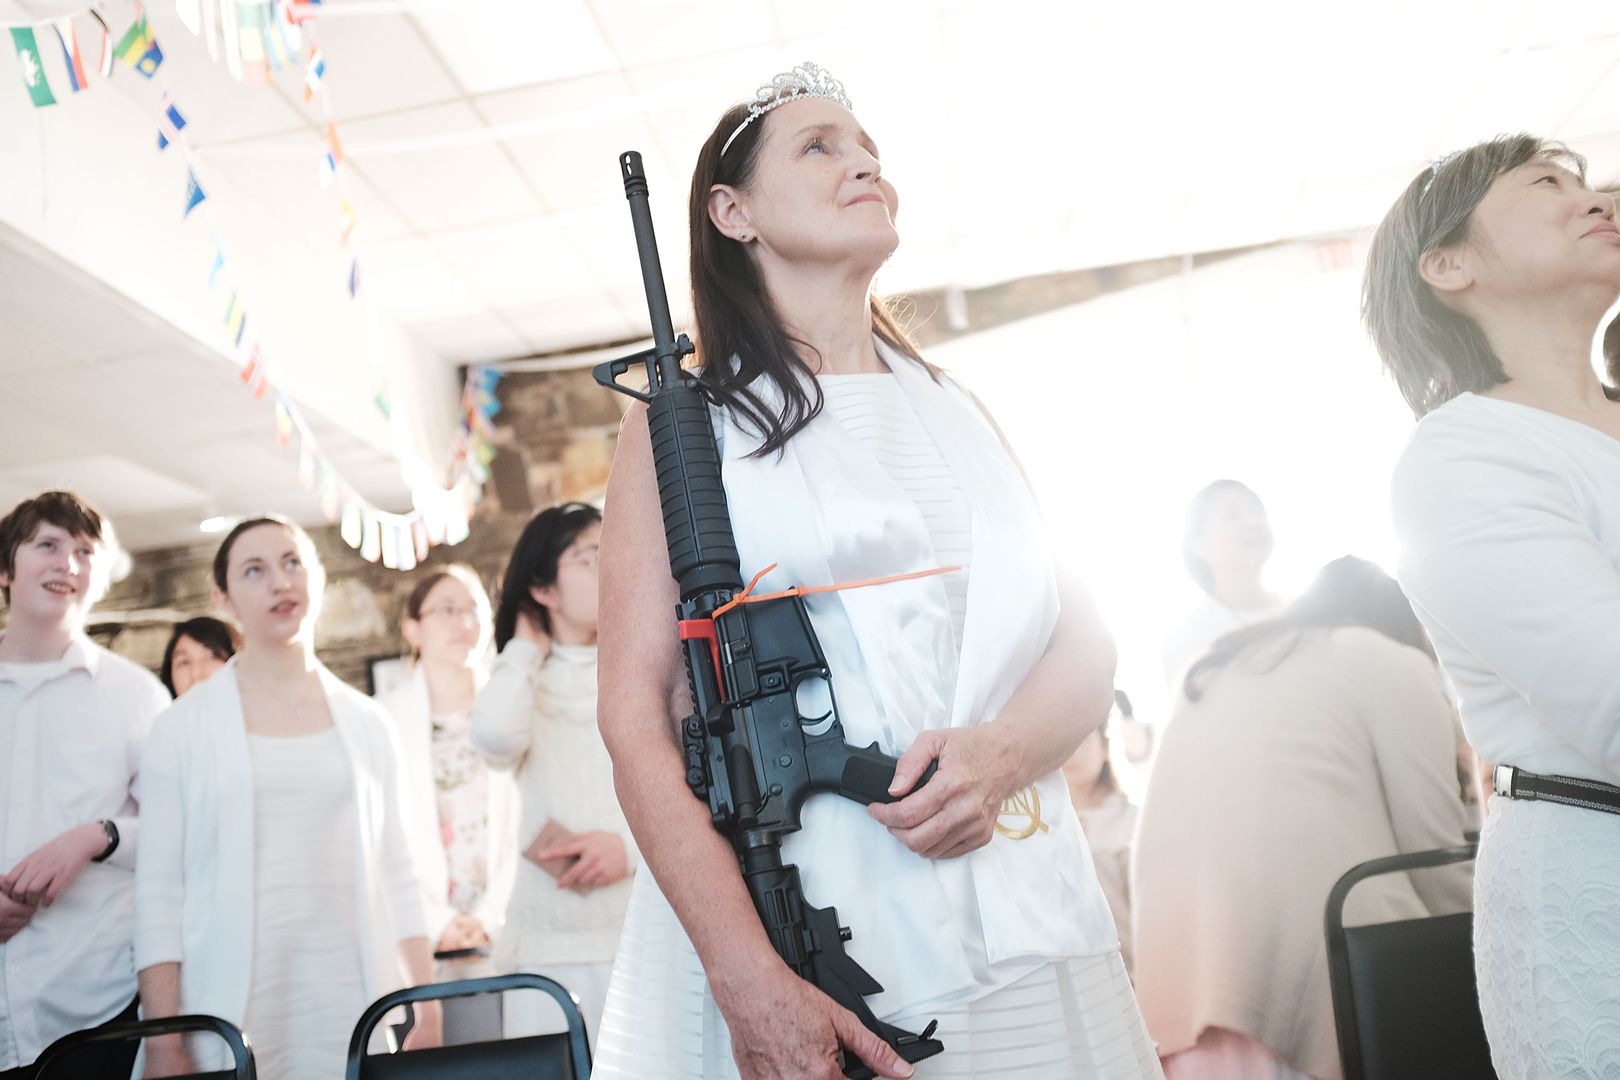 Błogosławili karabiny AR-15 w kościele. Fala protestów w USA po kontrowersyjnym nabożeństwie